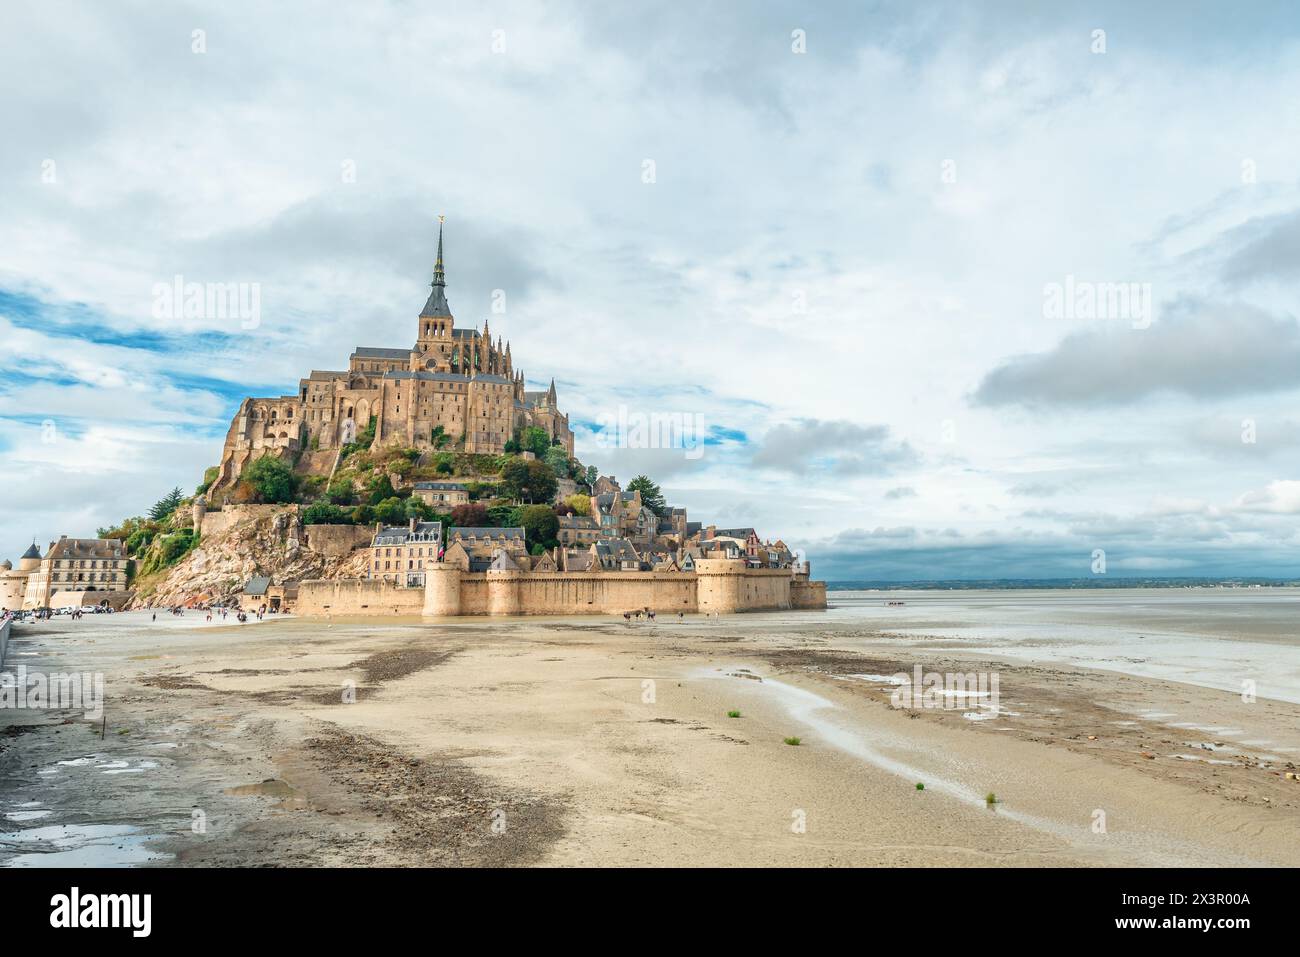 Abbazia di Mont Saint Michel sull'isola durante la bassa marea, Normandia, Francia settentrionale, Europa. Isola di marea con cattedrale gotica medievale in Normandia Foto Stock